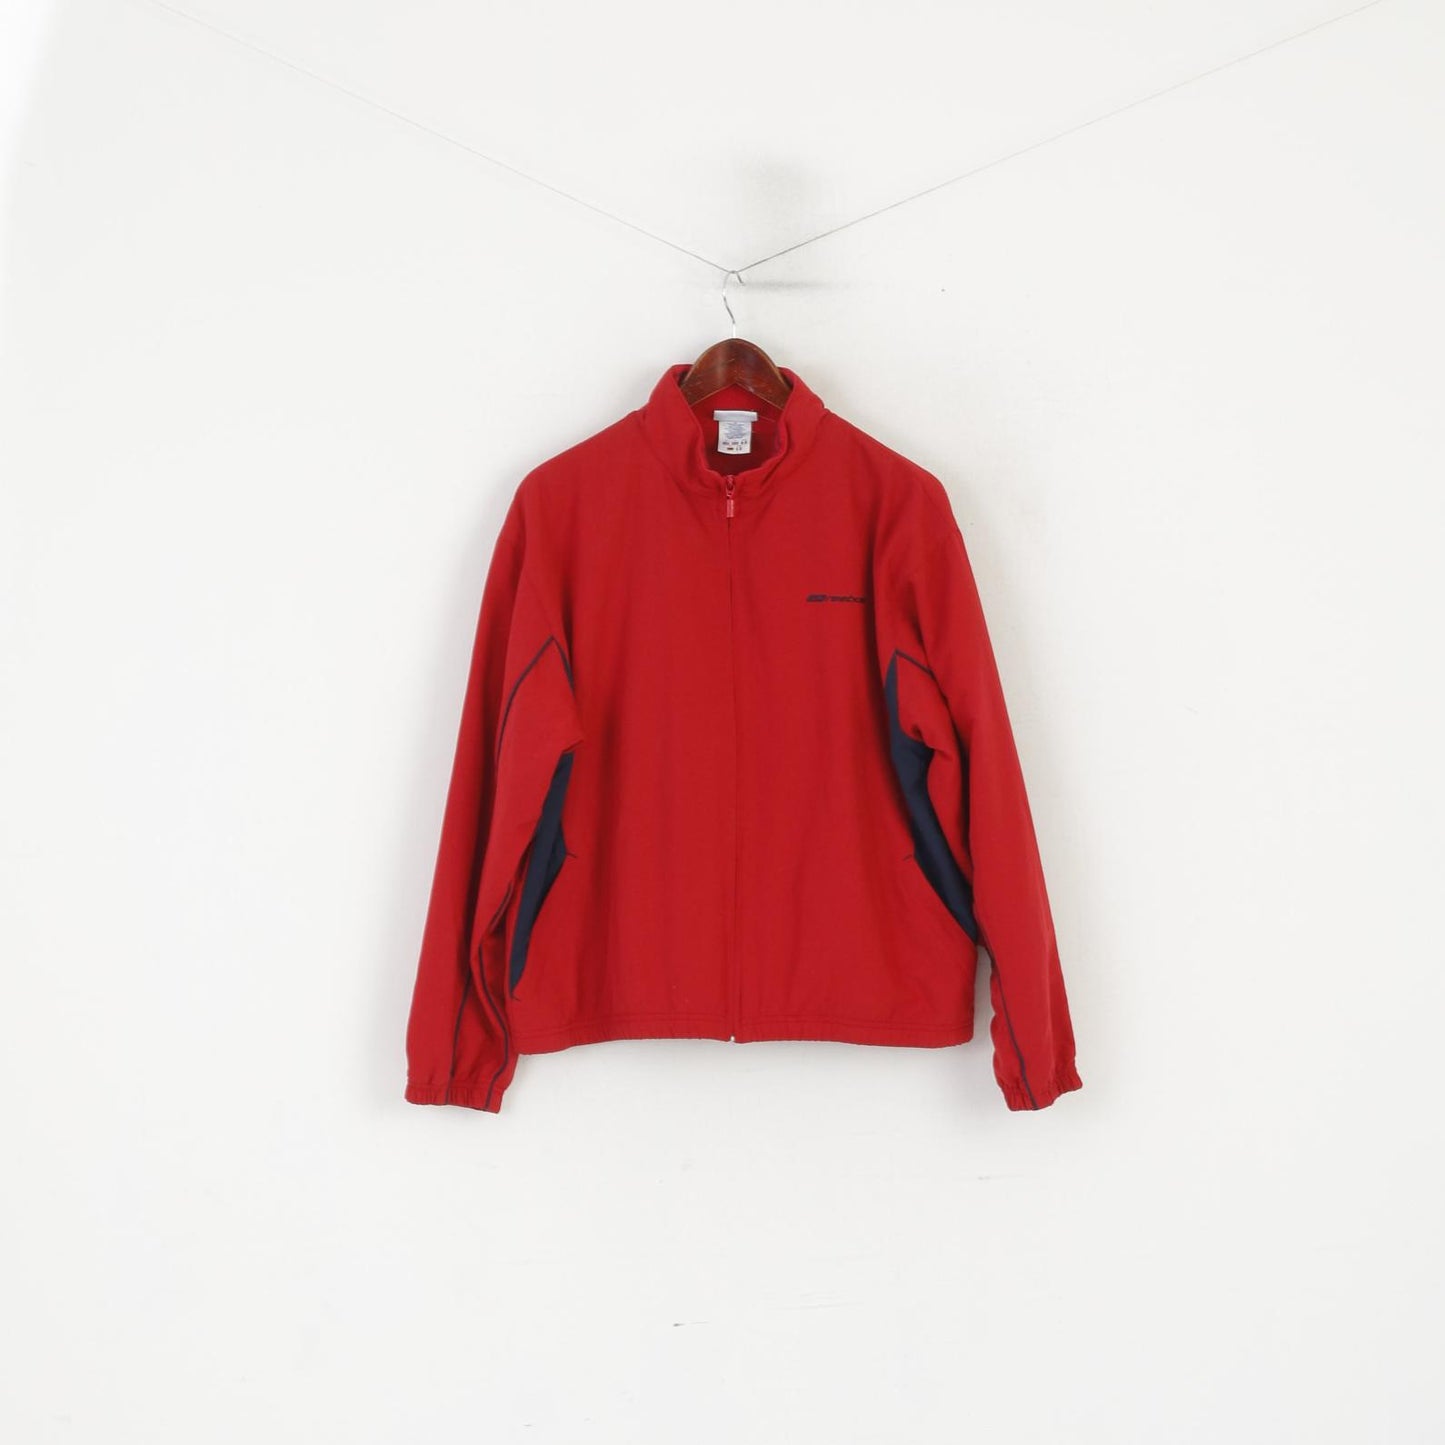 Reebok Women XL 16 Jacket Red Vintage Sportswear Zip Up  Track Top